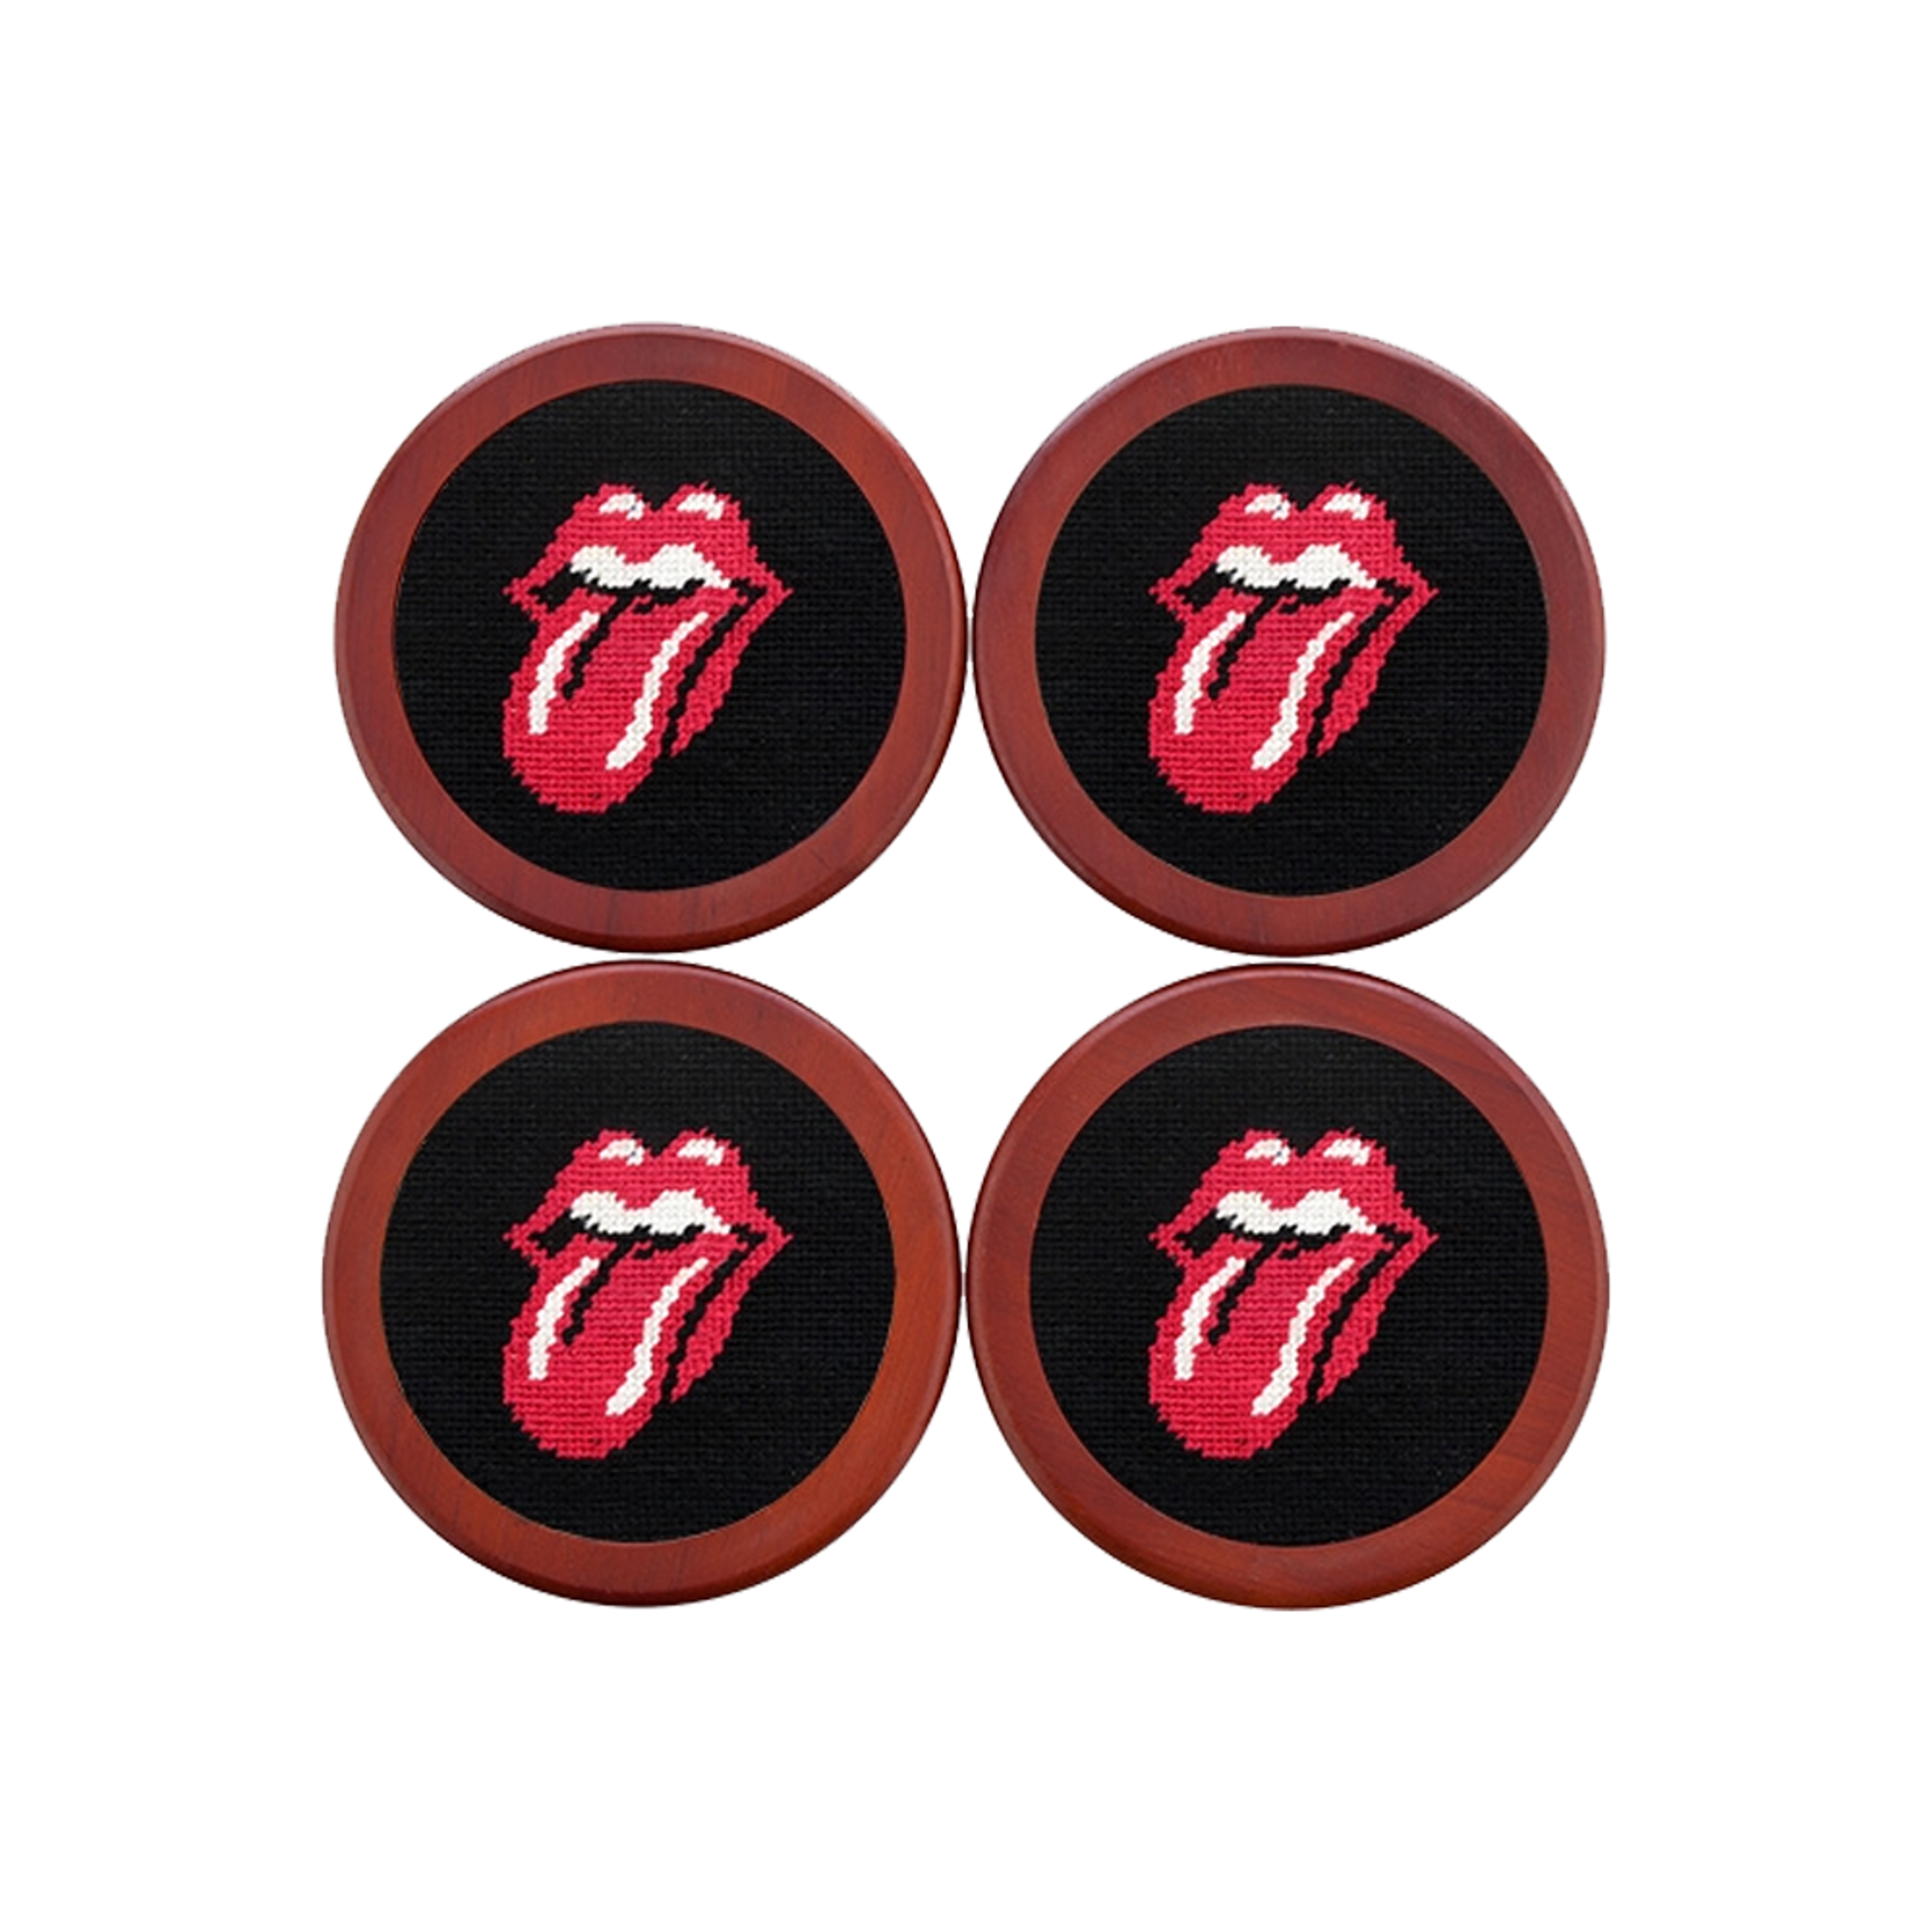 Rolling Stones Needlepoint Coaster Set